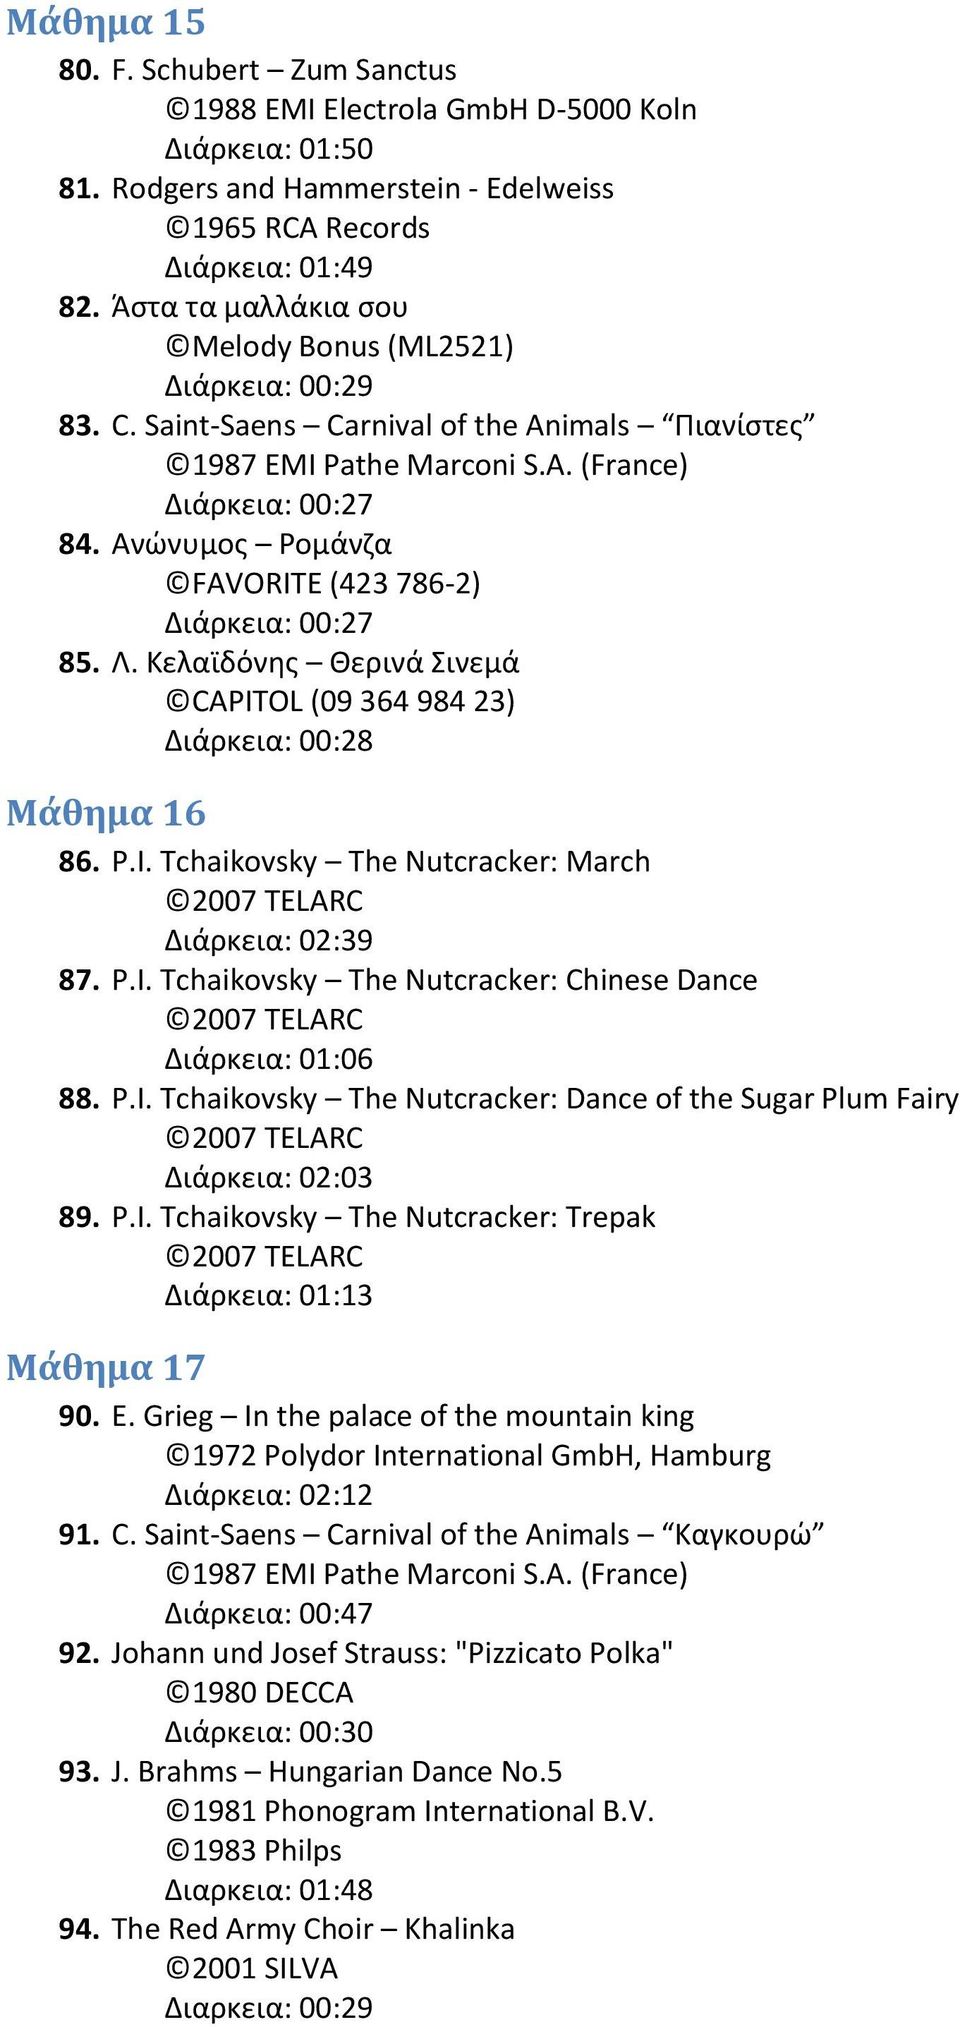 Κελαϊδόνθσ Κερινά ινεμά CAPITOL (09 364 984 23) Διάρκεια: 00:28 Μάθημα 16 86. P.I. Tchaikovsky The Nutcracker: March Διάρκεια: 02:39 87. P.I. Tchaikovsky The Nutcracker: Chinese Dance Διάρκεια: 01:06 88.